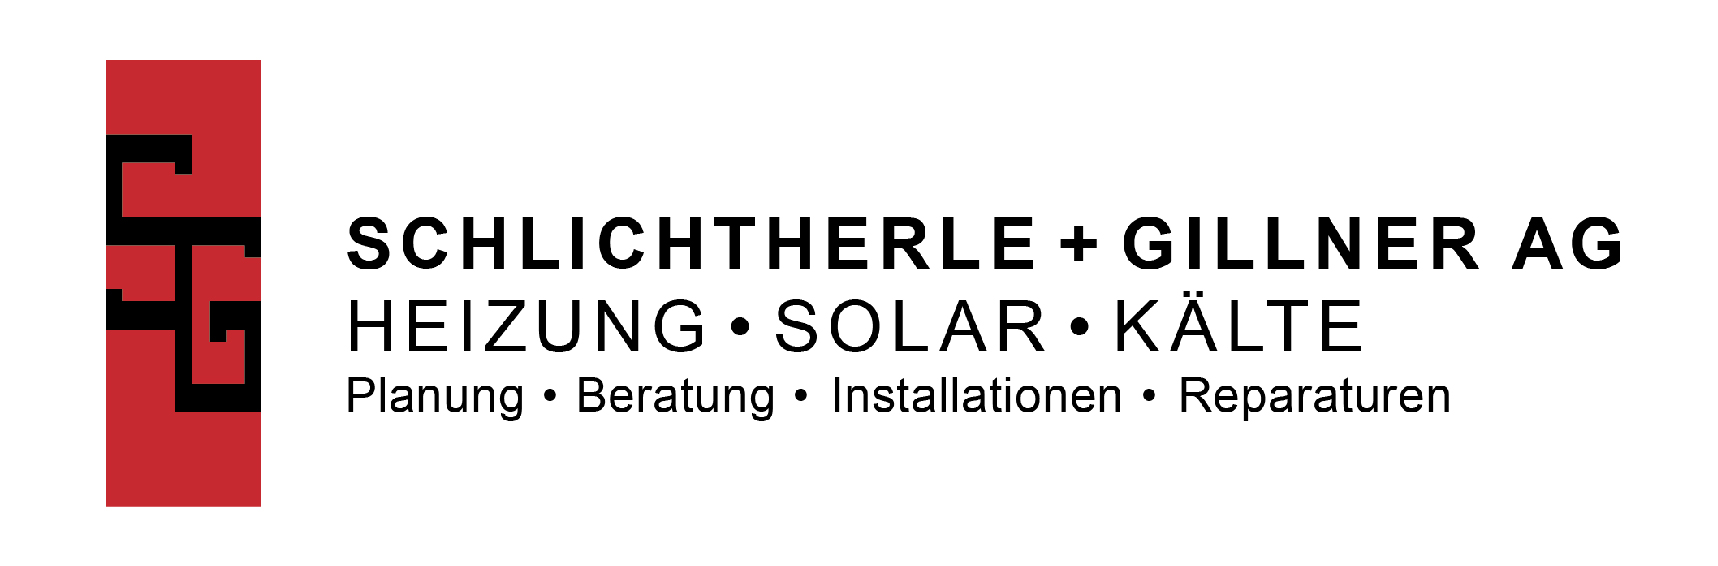 Schlichtherle + Gillner AG